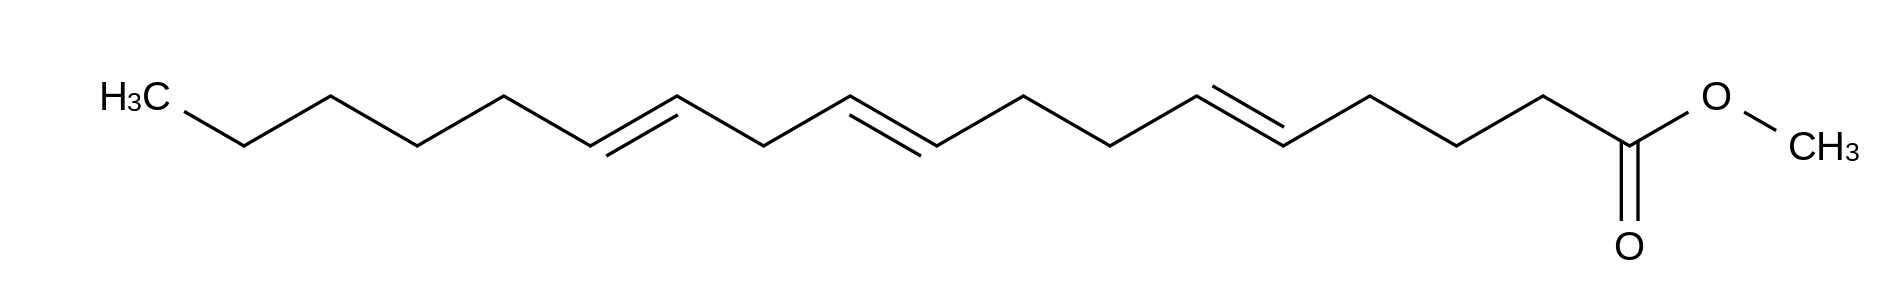 Pinolenic Acid Methyl Ester